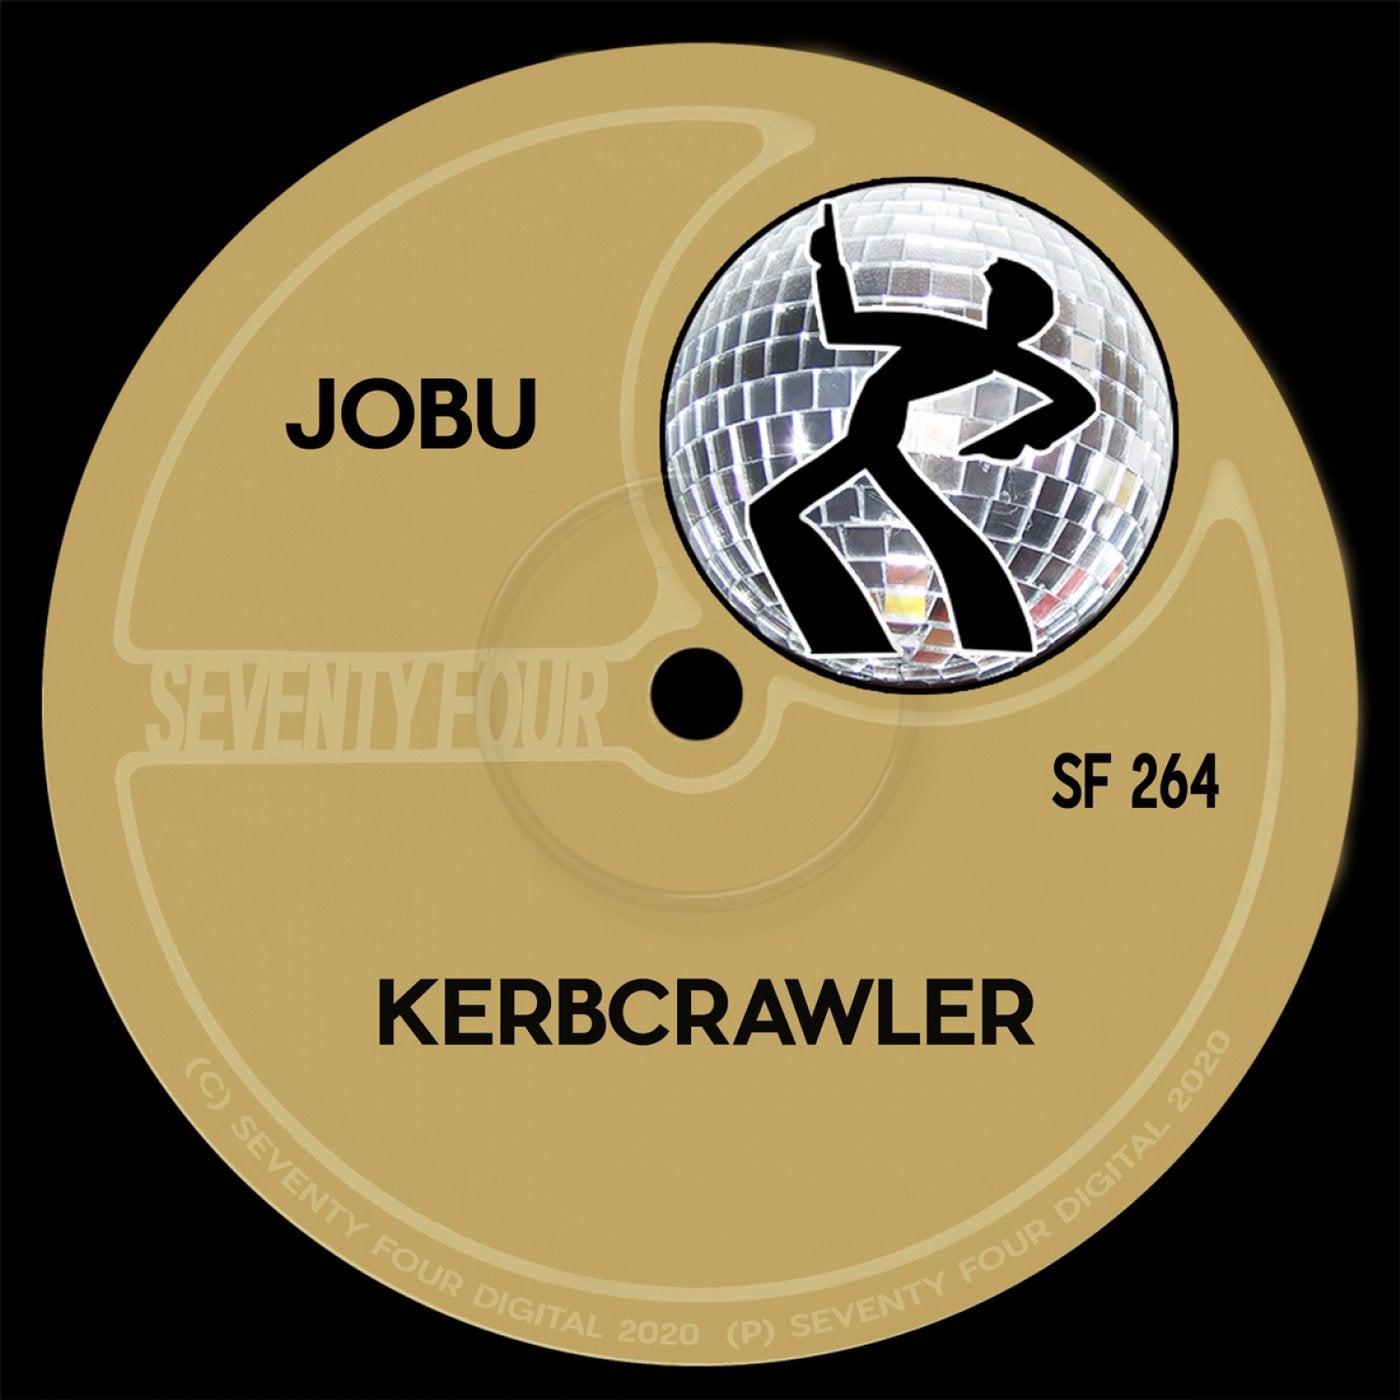 Kerbcrawler